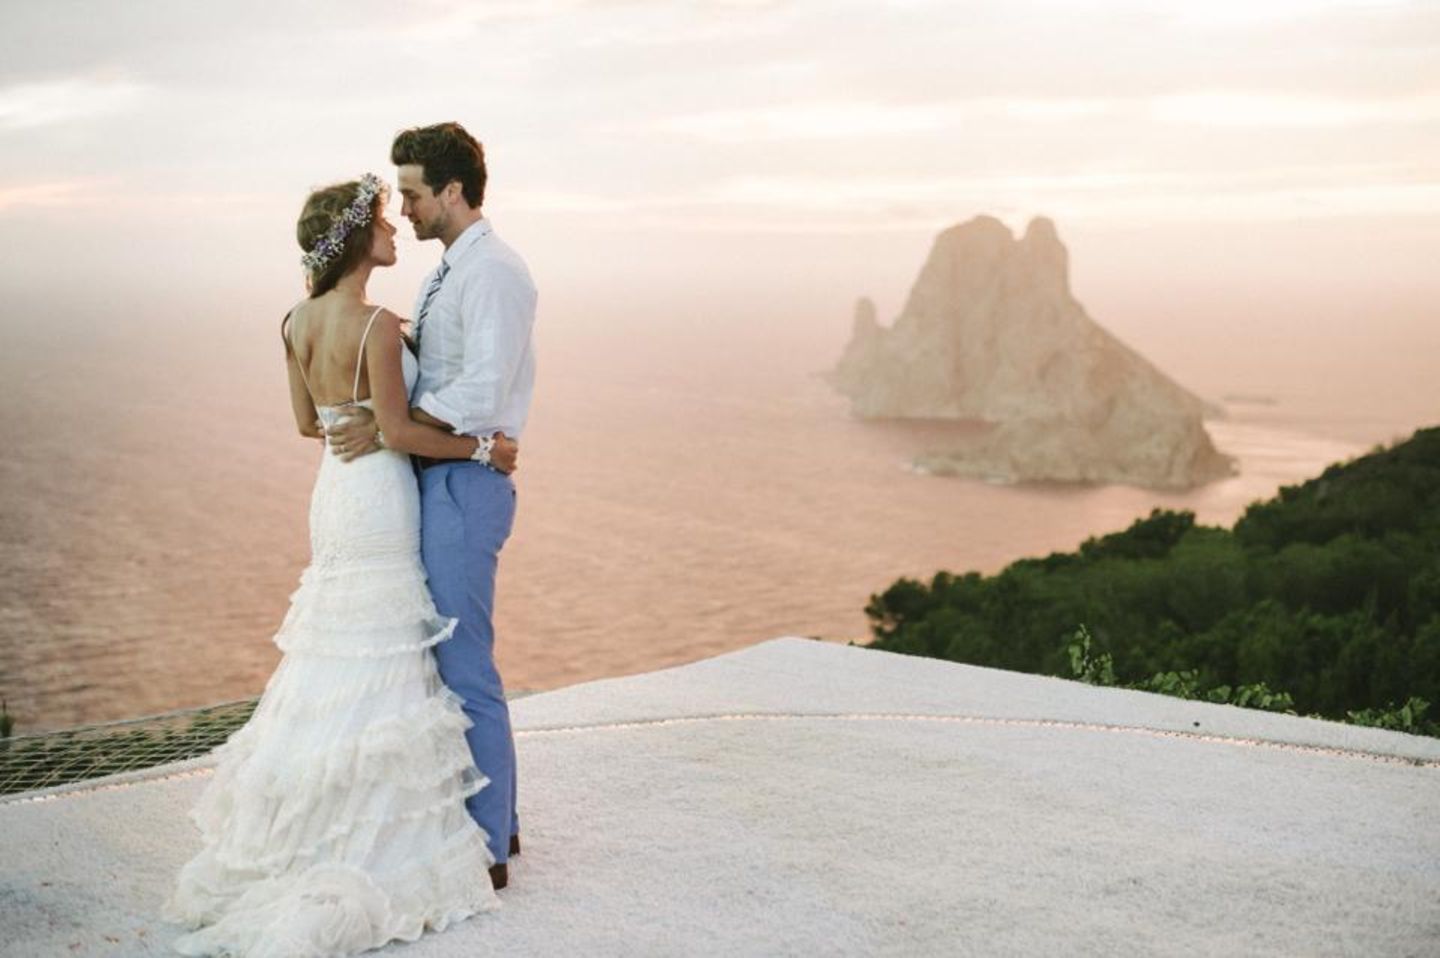 28. September 2013: Annemarie Warnkross und Wayne Carpendale haben zwei Jahre nach ihrer Verlobung geheiratet. Die Zeremonie fand am Strand von Ibiza mit Blick auf das offene Meer statt.